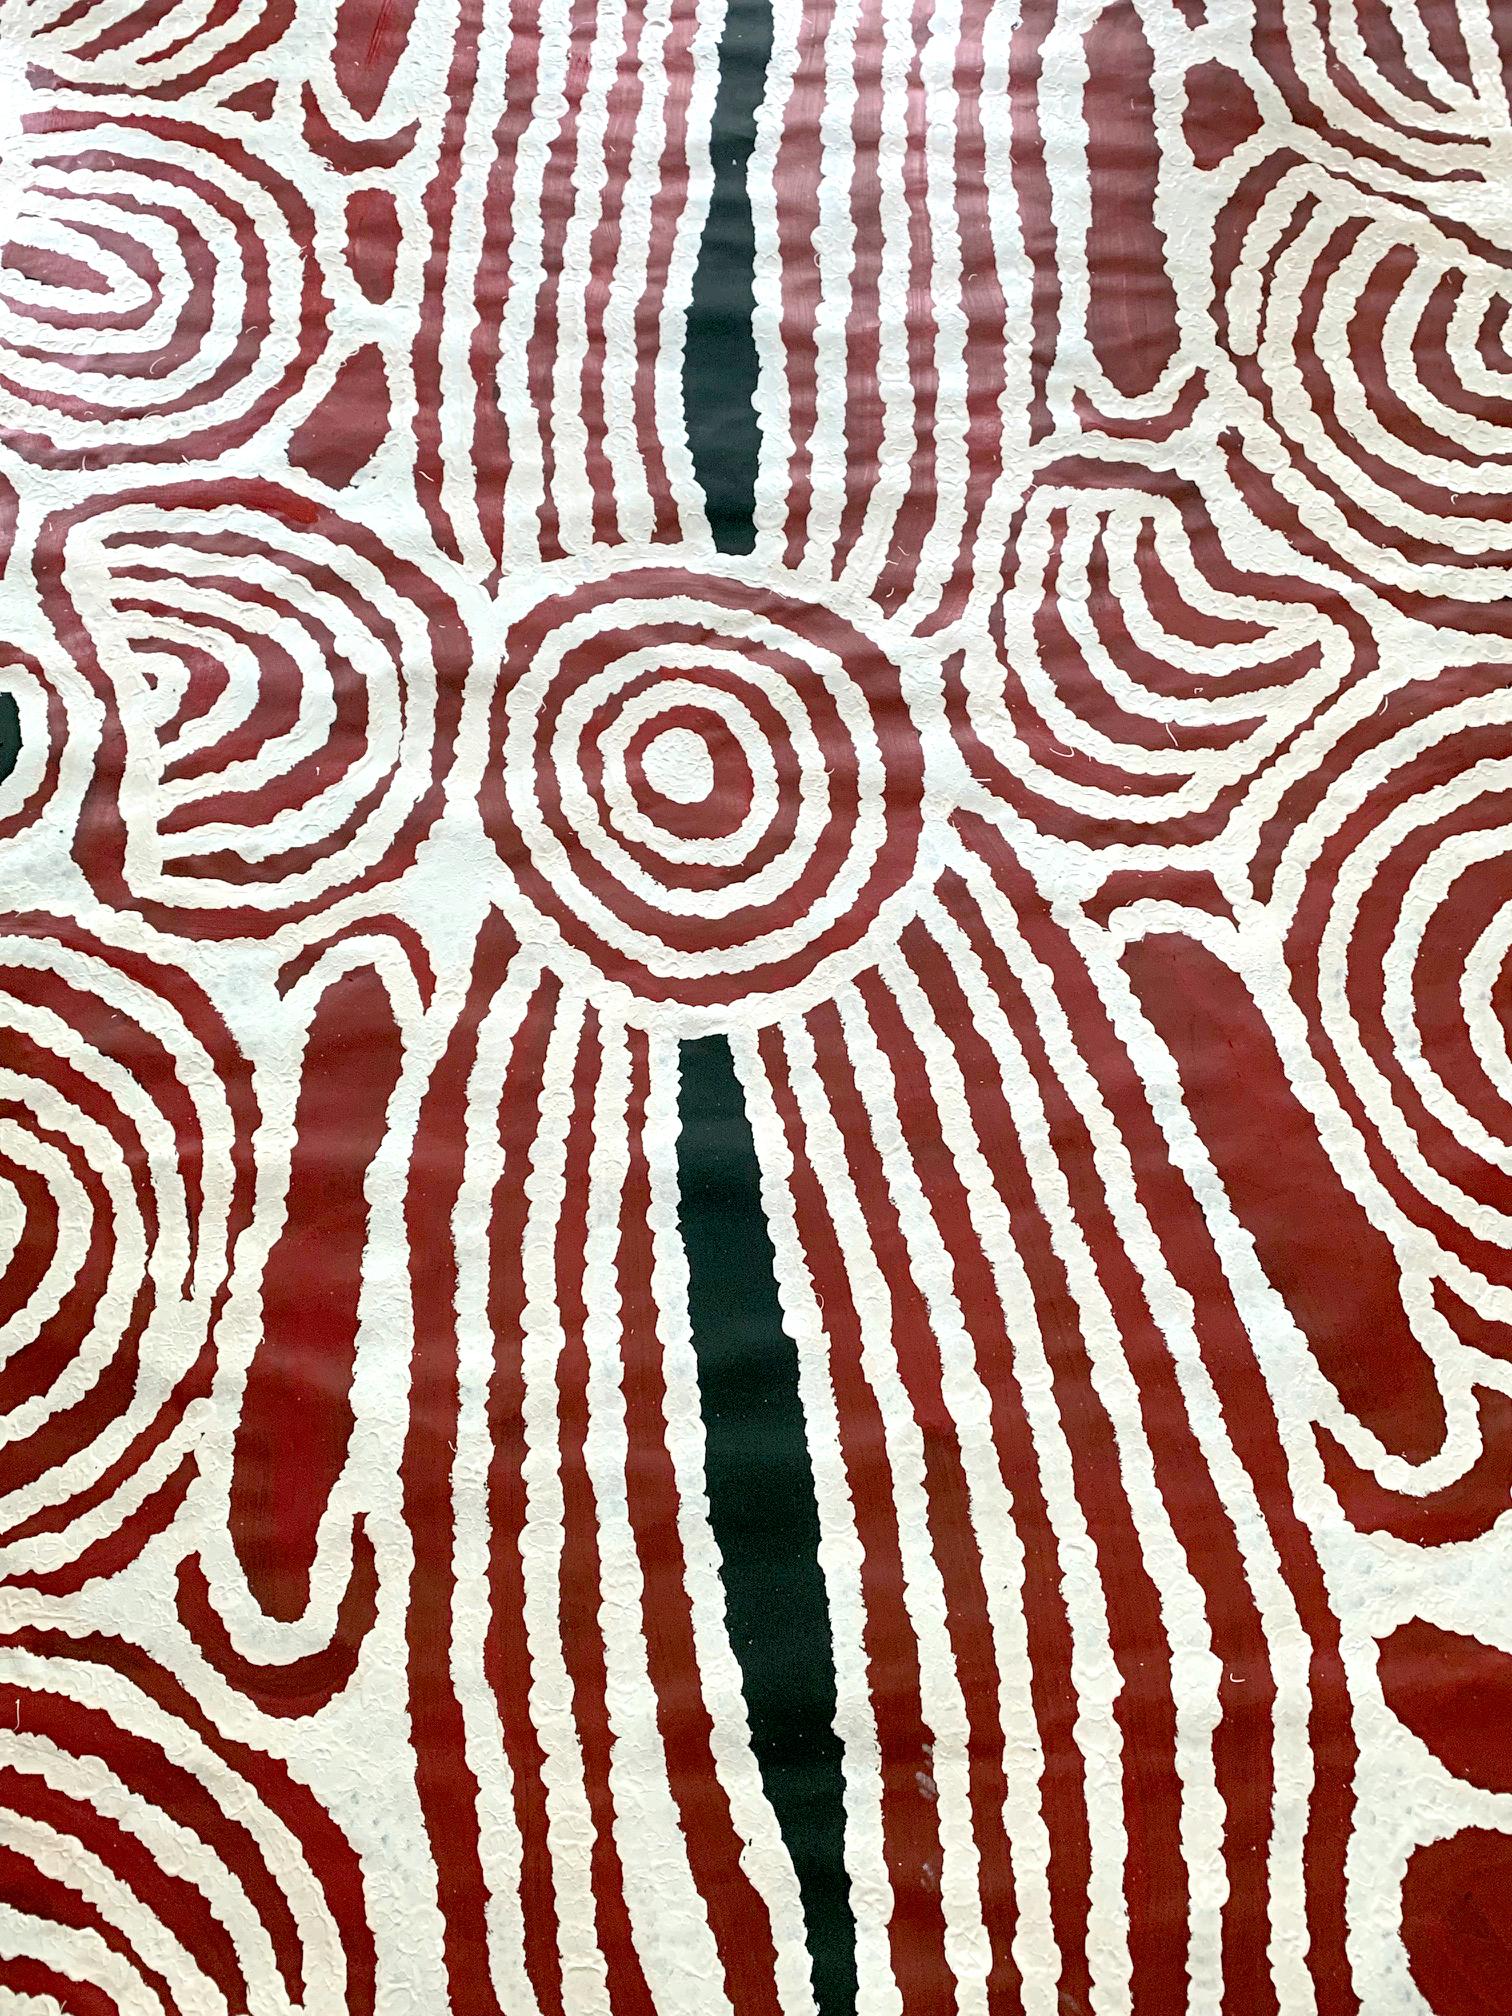 Large aboriginal painting by contemporary artist Ningura Napurrula entitled 